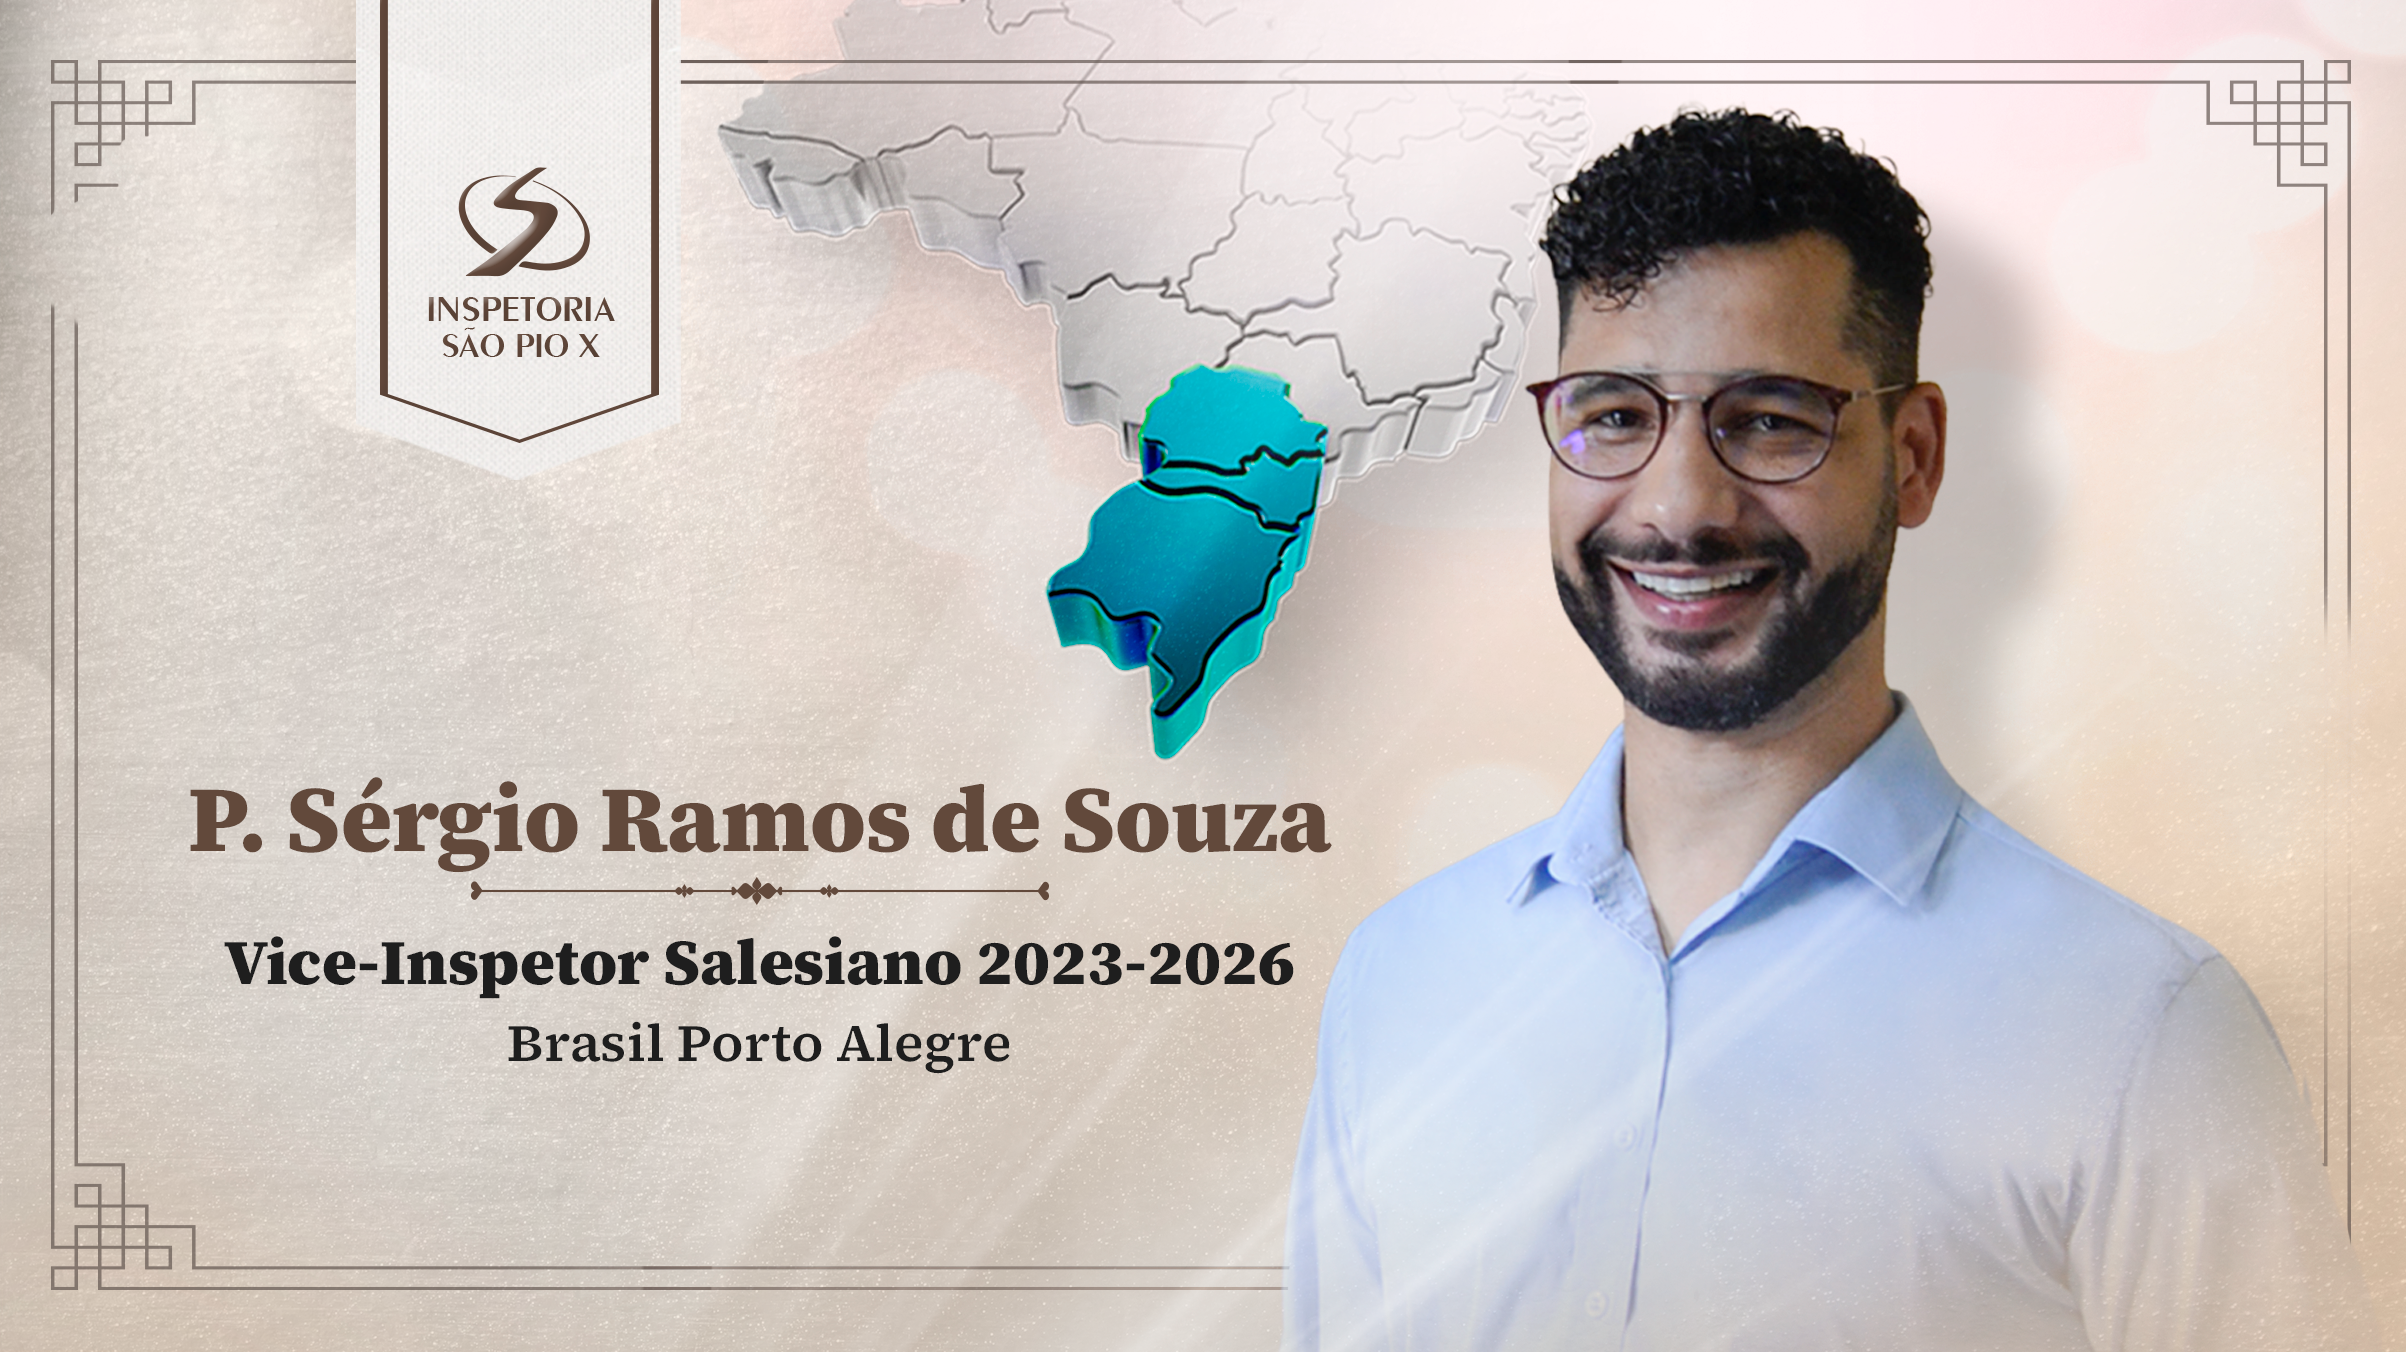 P. Sérgio Ramos de Souza nomeado Vice-Inspetor